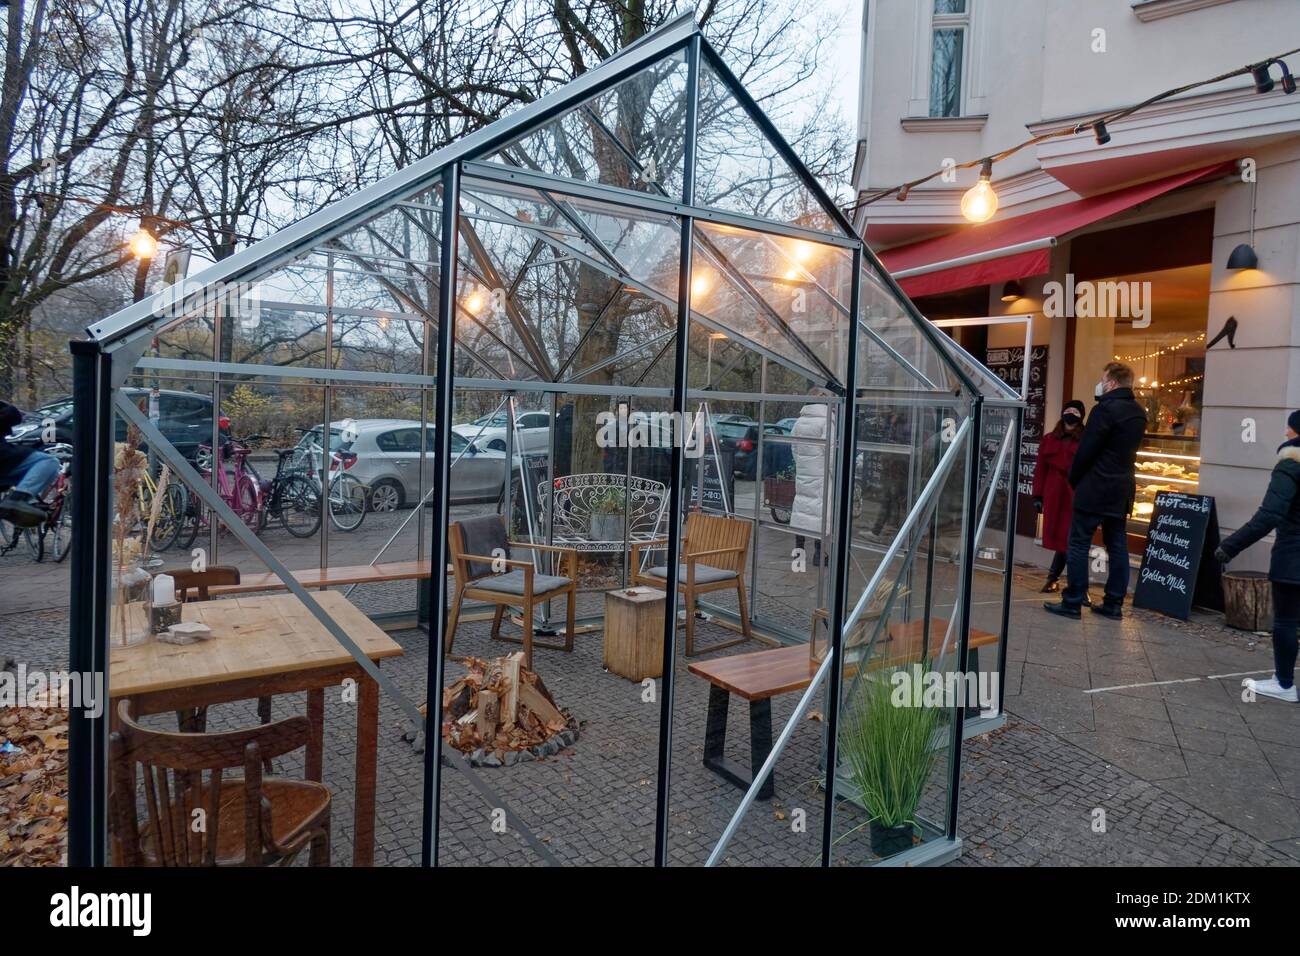 Gluehweinverkauf im Cafe Ahorn am Urbahnhafen in Kreuzberg waehrend des Corona-lockdown am letzten Wochende vor dem harten Lockdown ab 16. Dezember m Foto Stock